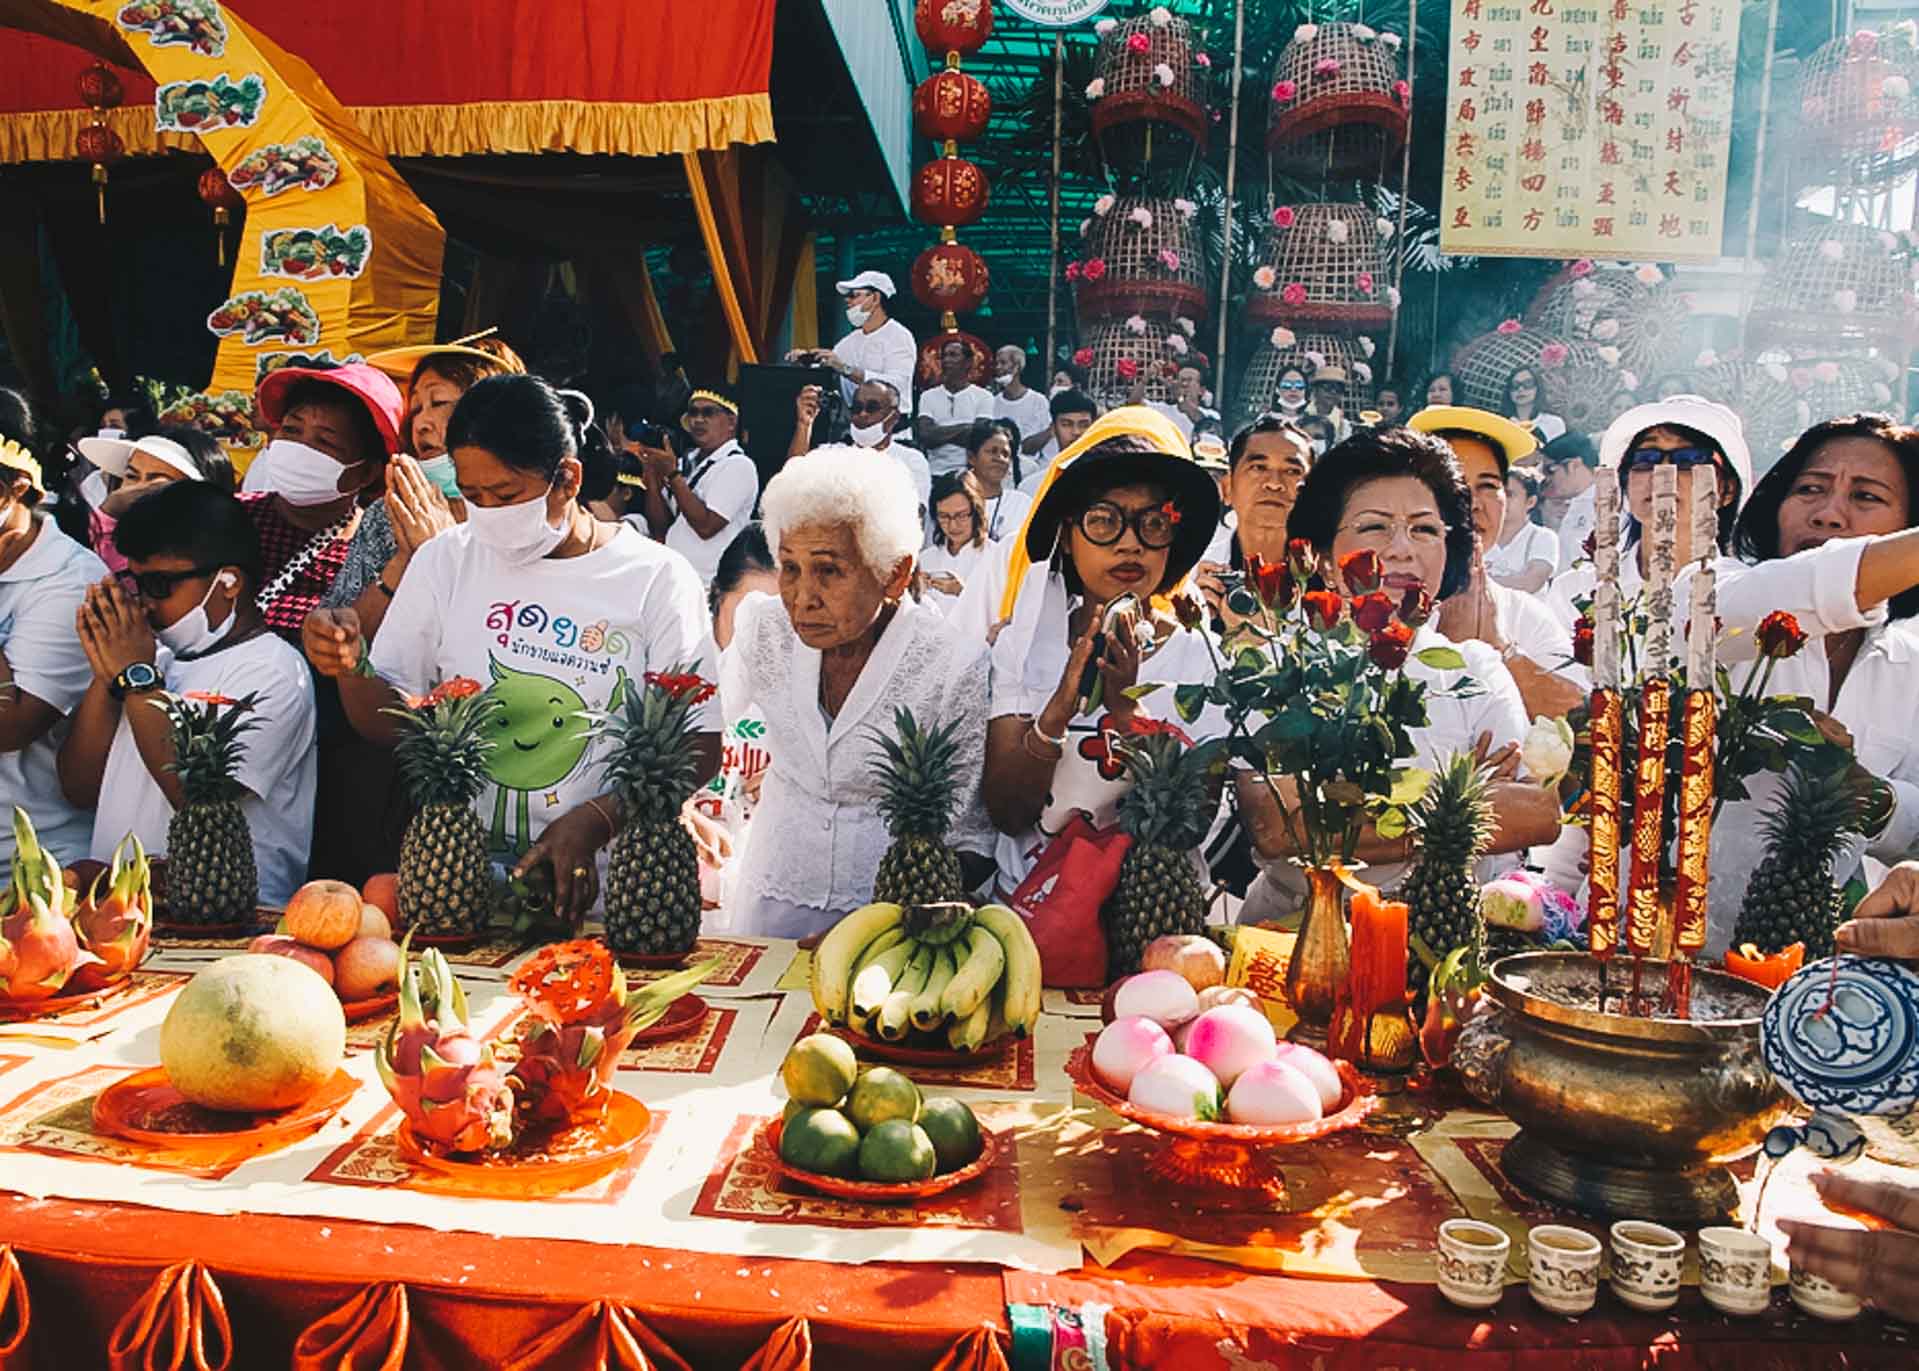 Spectators at Phuket Vegetarian Festival